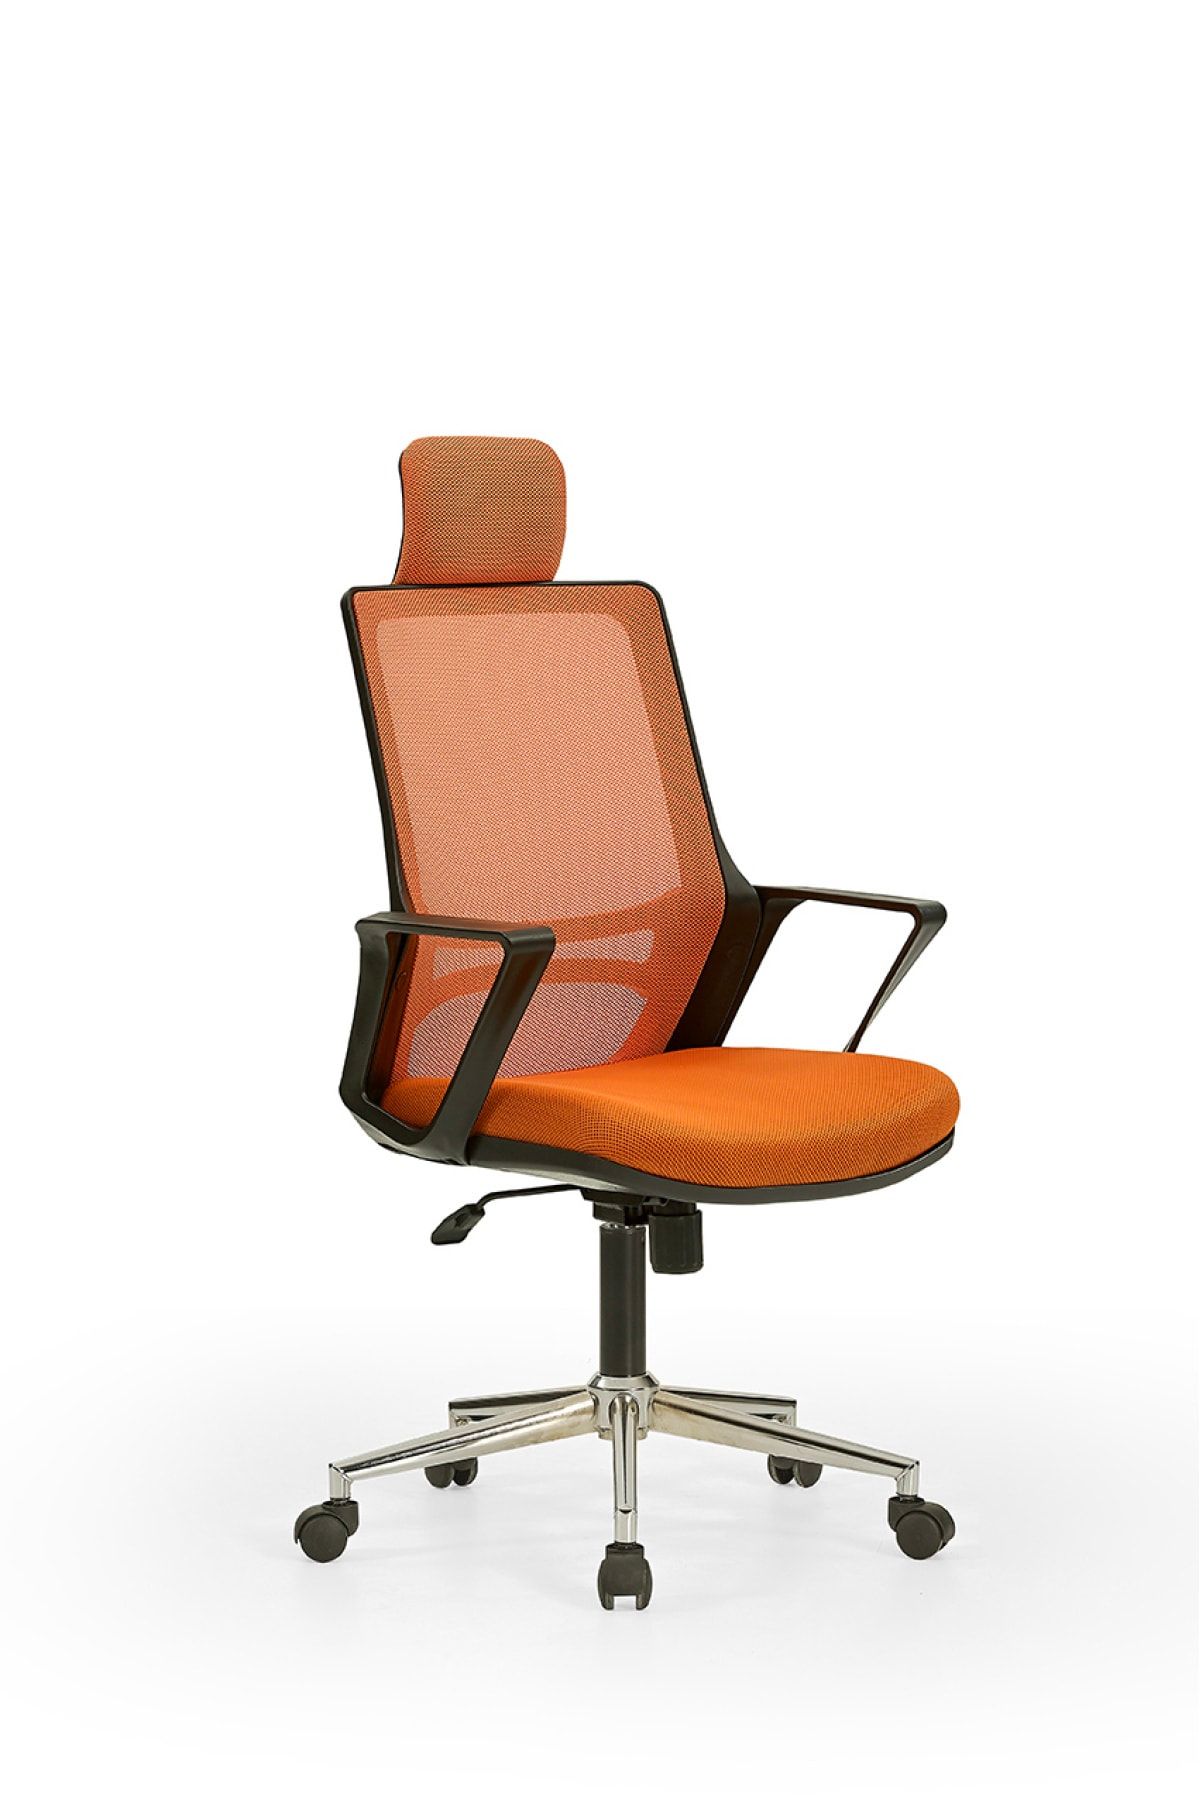 MEHMET YAREN BURO Arya1 Bilgisayar Koltuğu - Ofis - Müdür - Büro - Çalışma Sandalyesi Turuncu Renk Krom Ayaklı